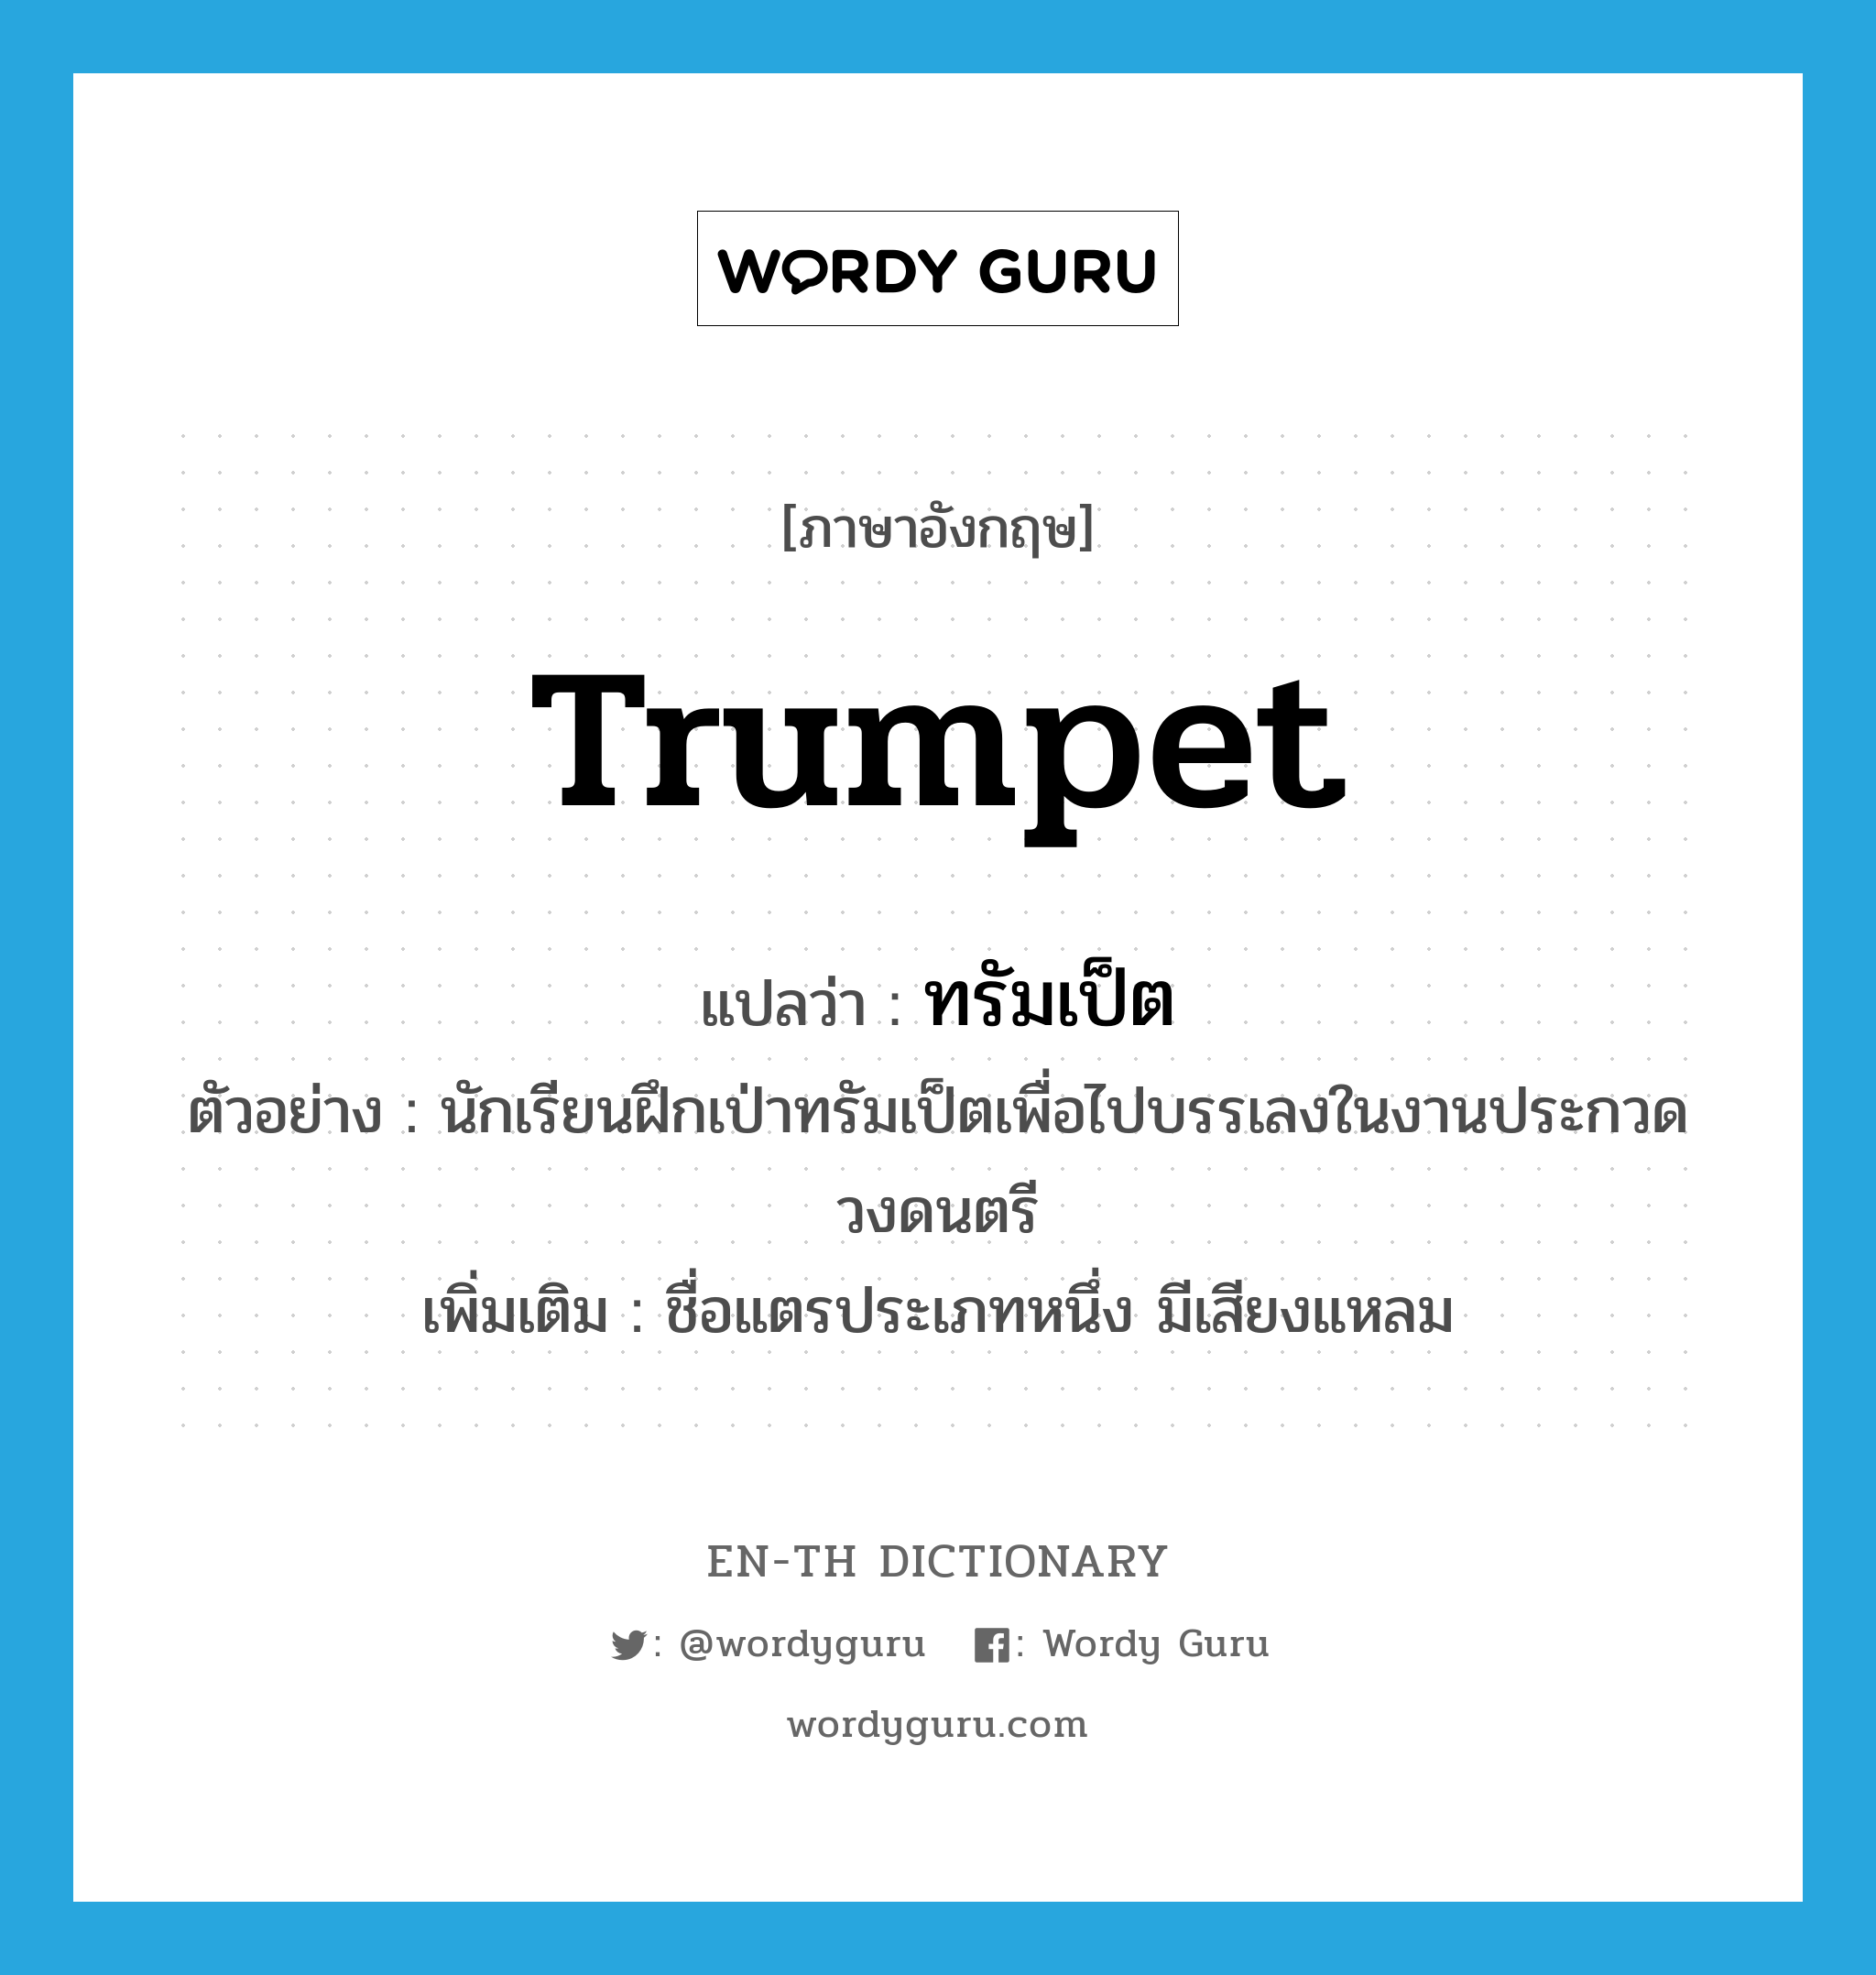 trumpet แปลว่า?, คำศัพท์ภาษาอังกฤษ trumpet แปลว่า ทรัมเป็ต ประเภท N ตัวอย่าง นักเรียนฝึกเป่าทรัมเป็ตเพื่อไปบรรเลงในงานประกวดวงดนตรี เพิ่มเติม ชื่อแตรประเภทหนึ่ง มีเสียงแหลม หมวด N